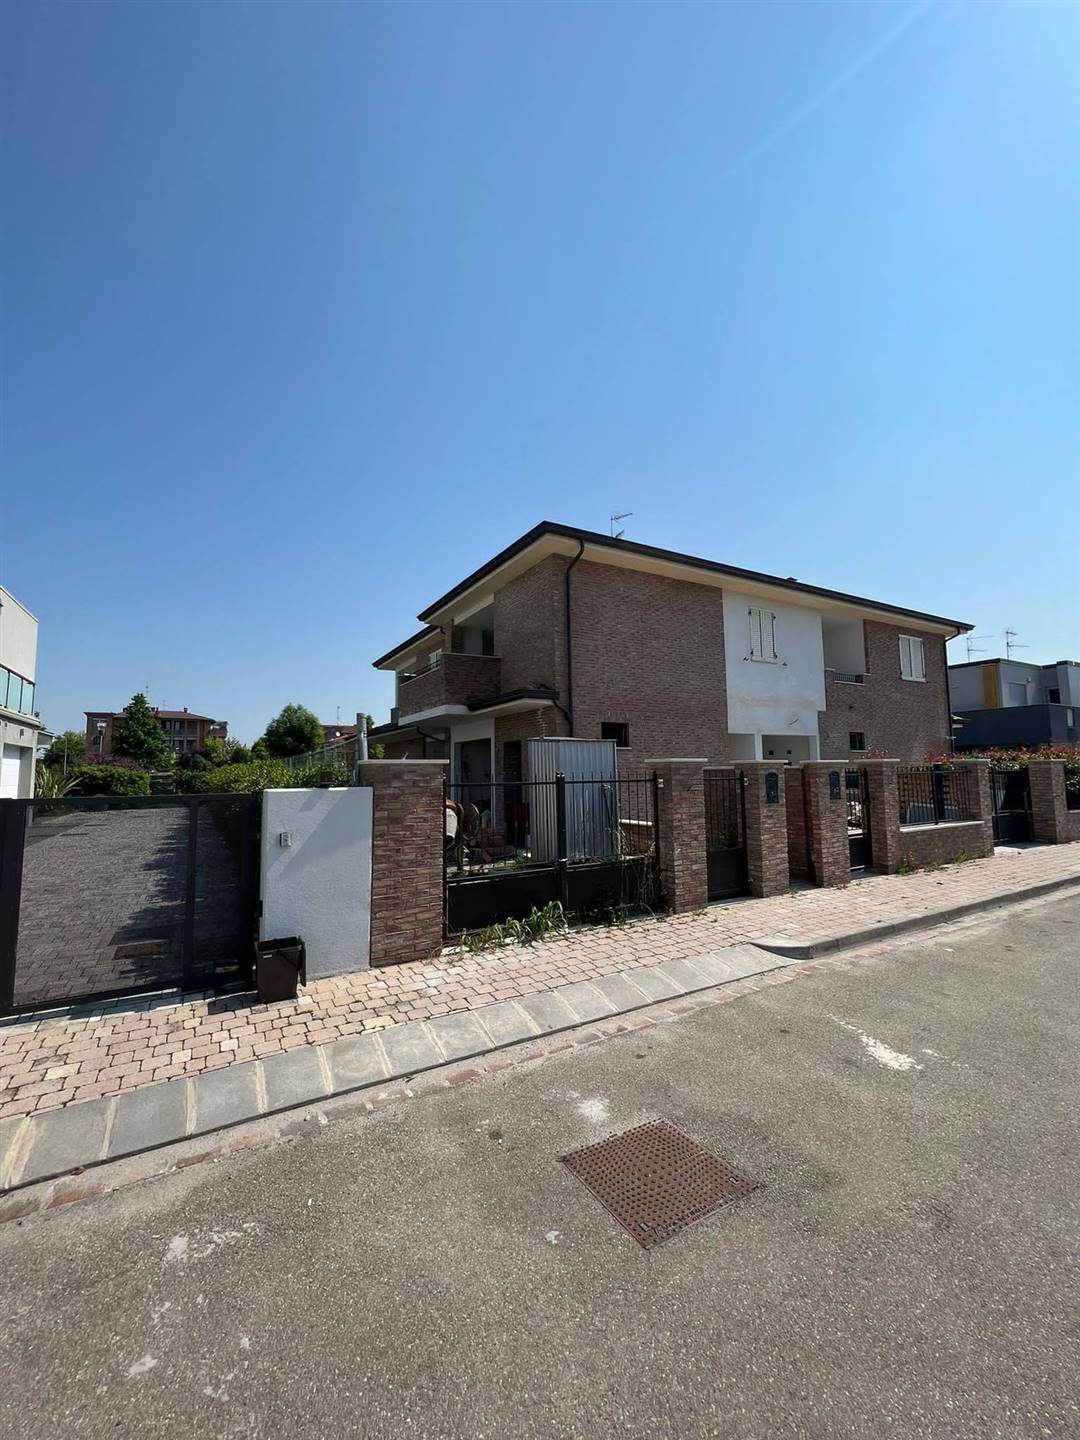 Villa in vendita a Carpi, 3 locali, zona Località: CENTRO, prezzo € 360.000 | PortaleAgenzieImmobiliari.it